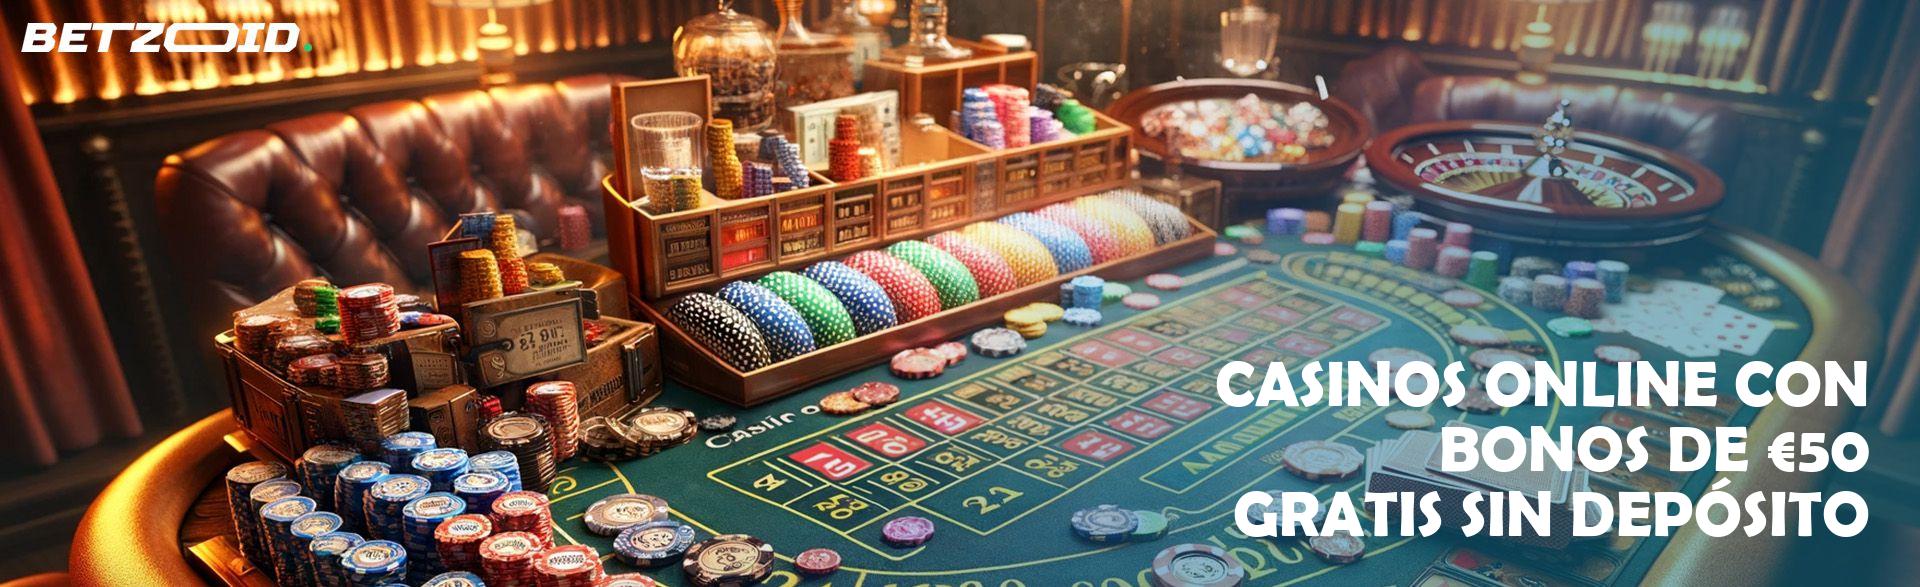 Casinos españoles con bono sin depósito